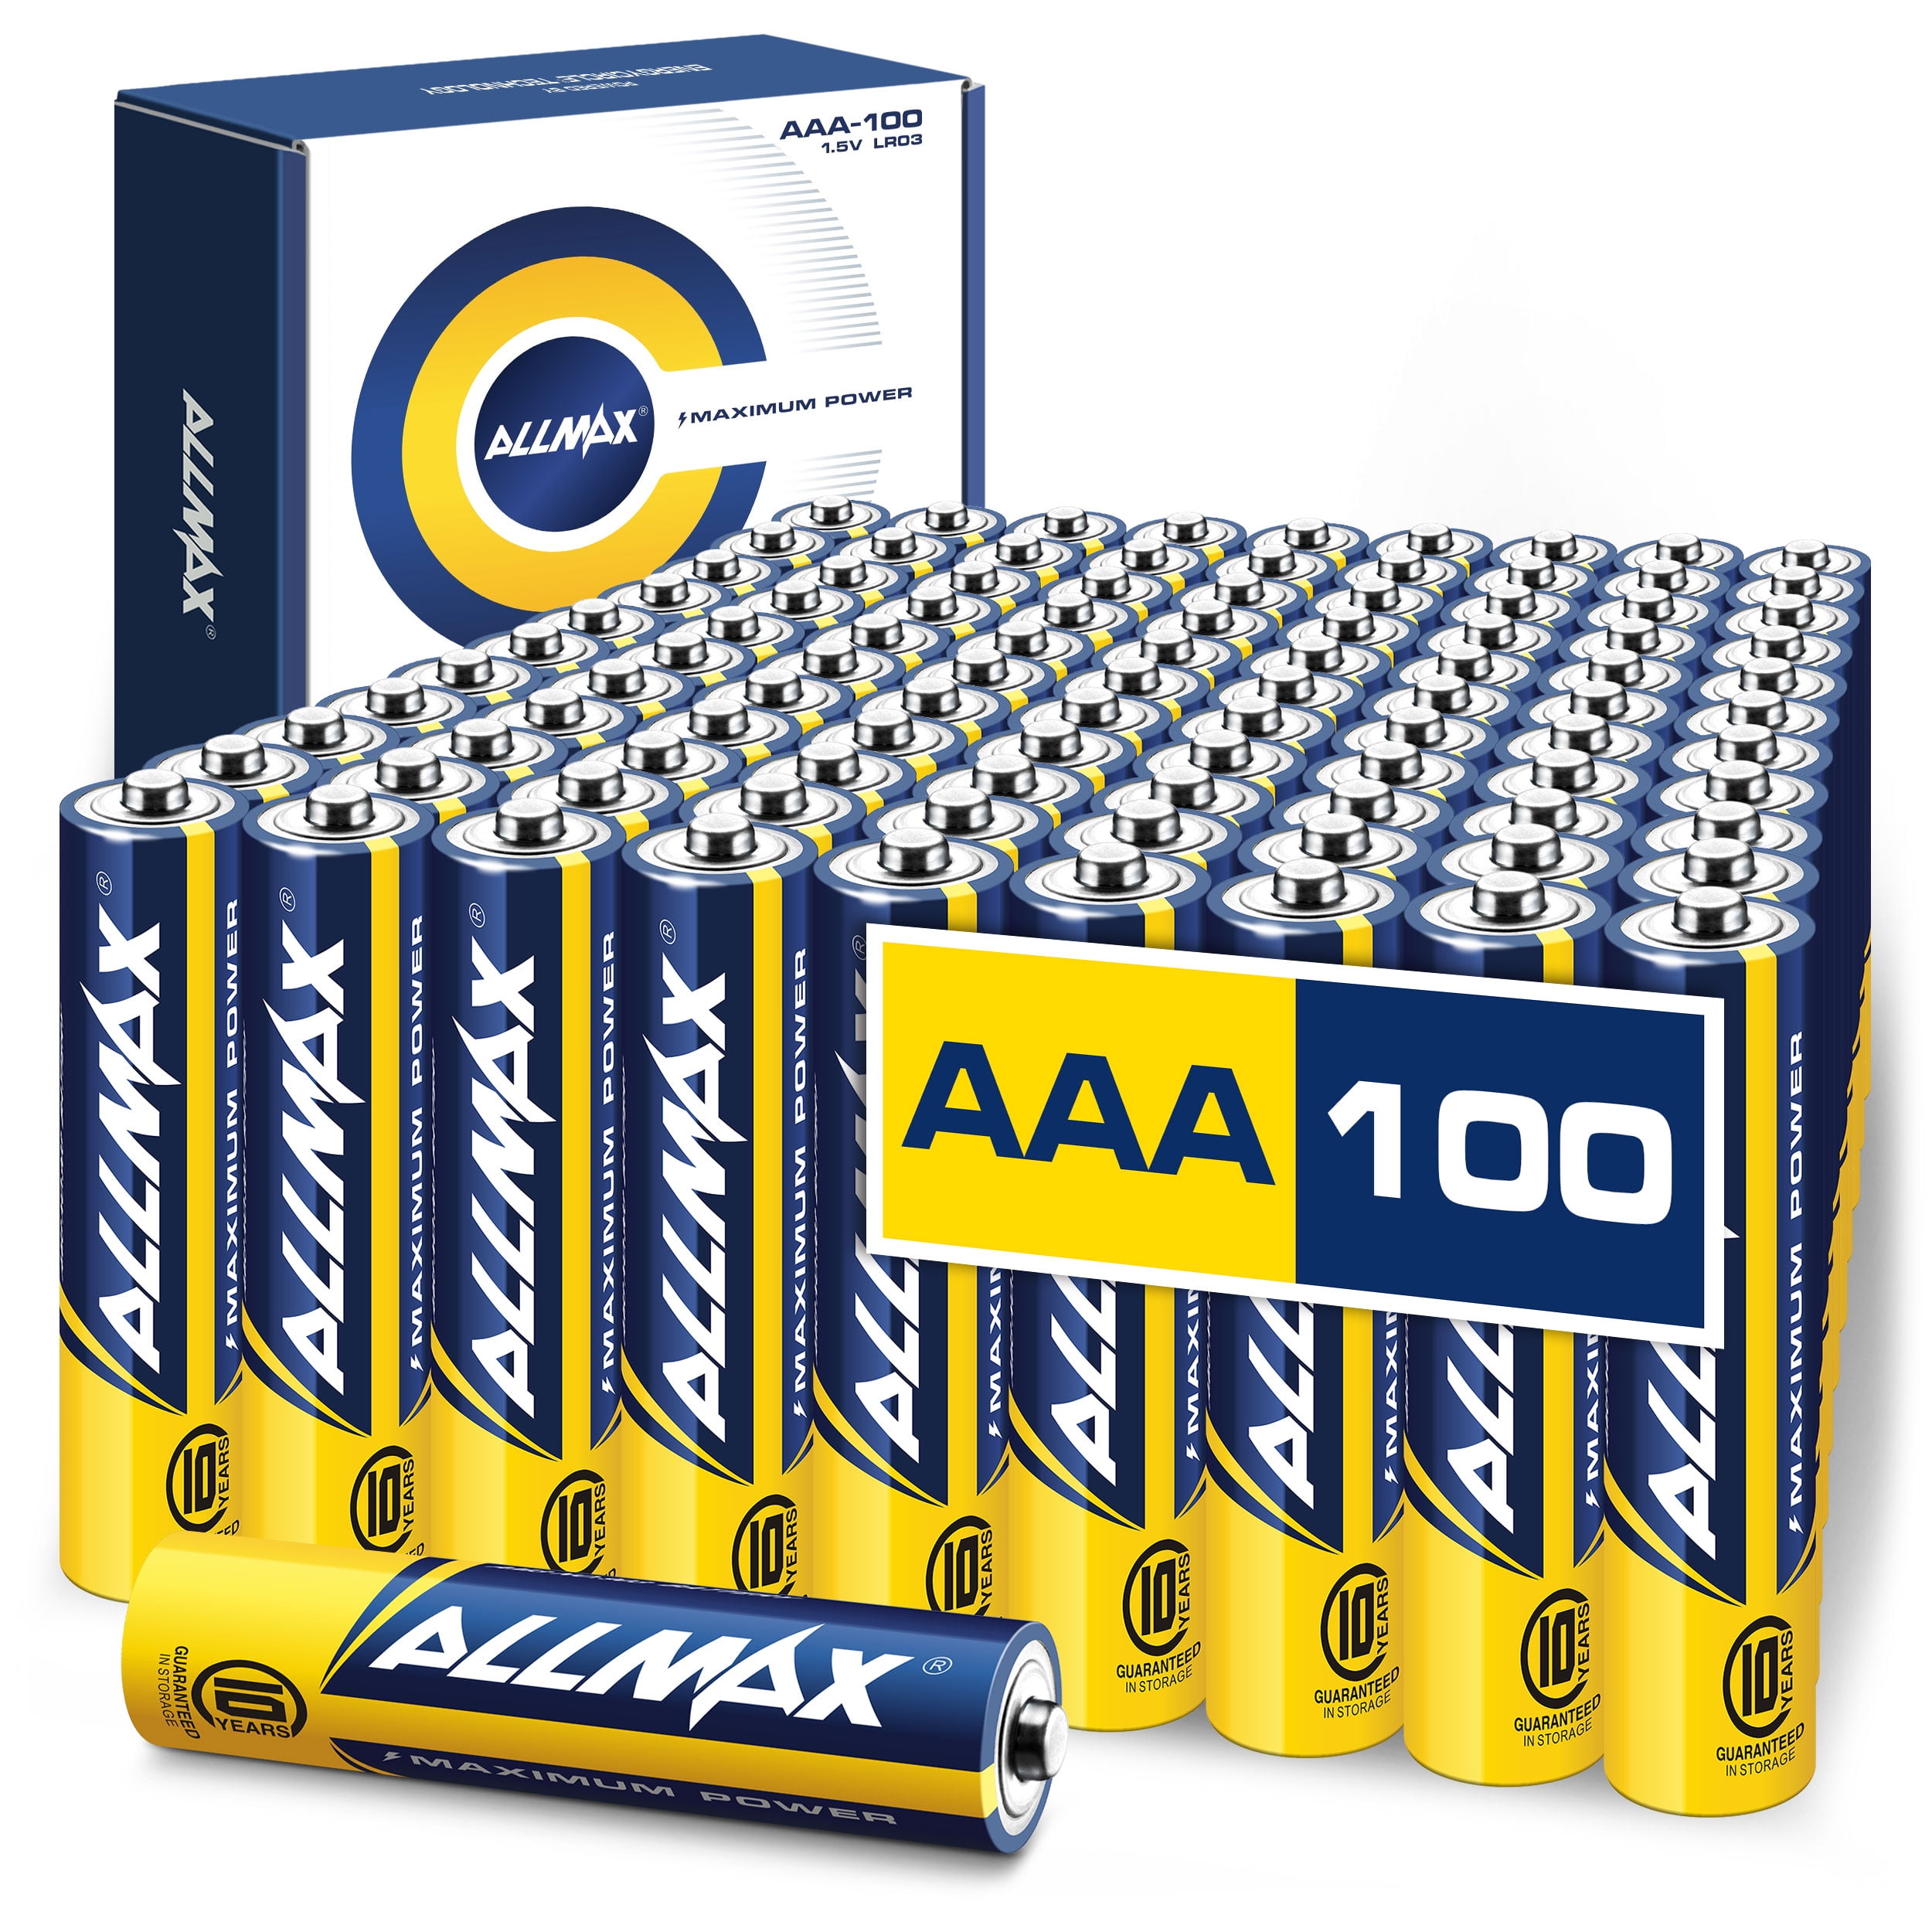 Duracell AAA LR03 1.5V Alkaline Button Top Battery - Bulk